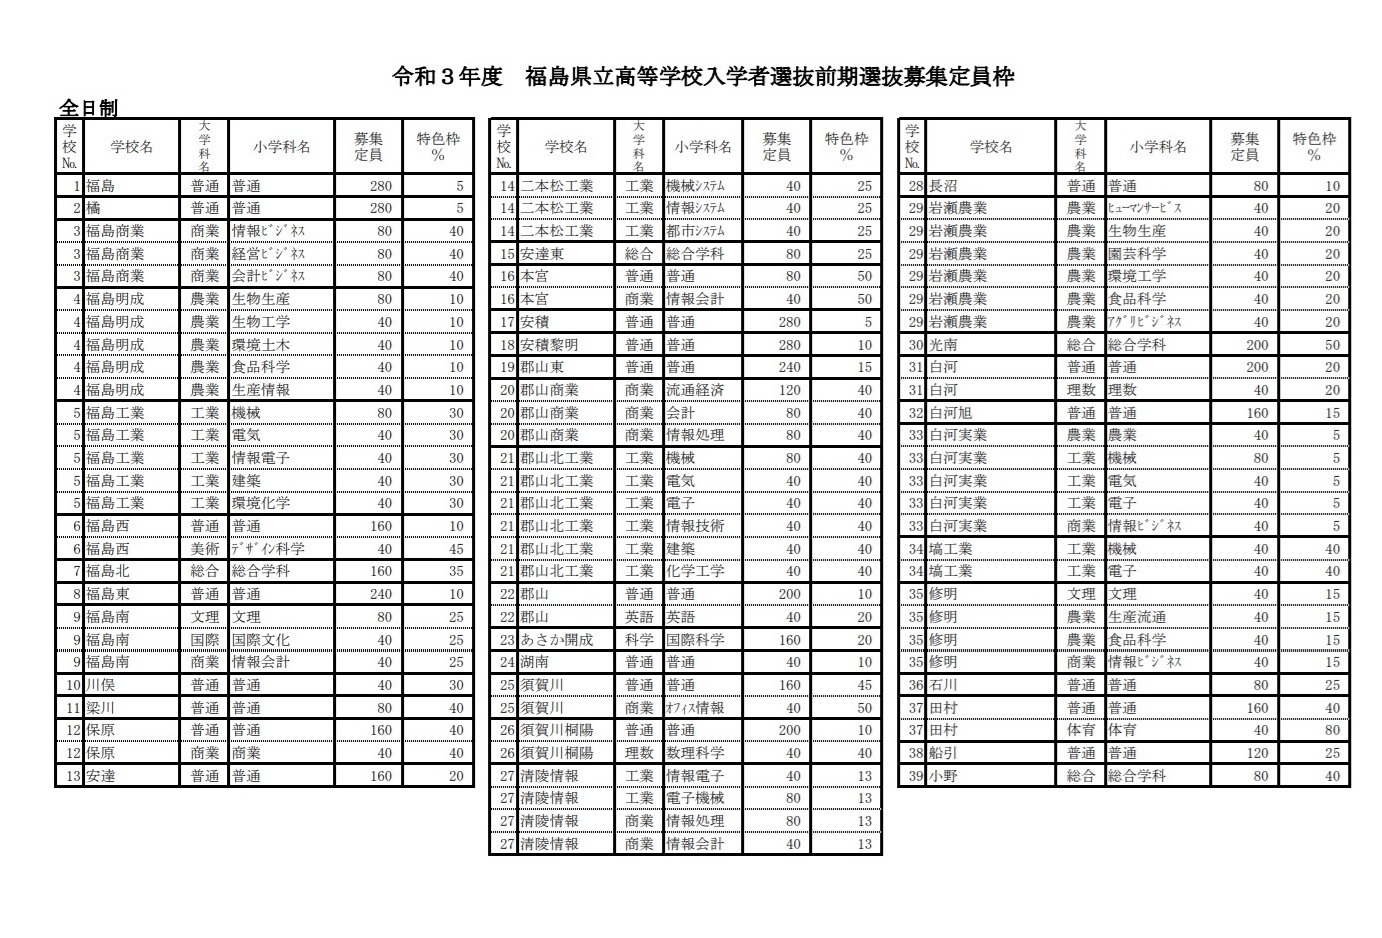 高校受験21 福島県立高 特色選抜募集定員枠を公表 リセマム